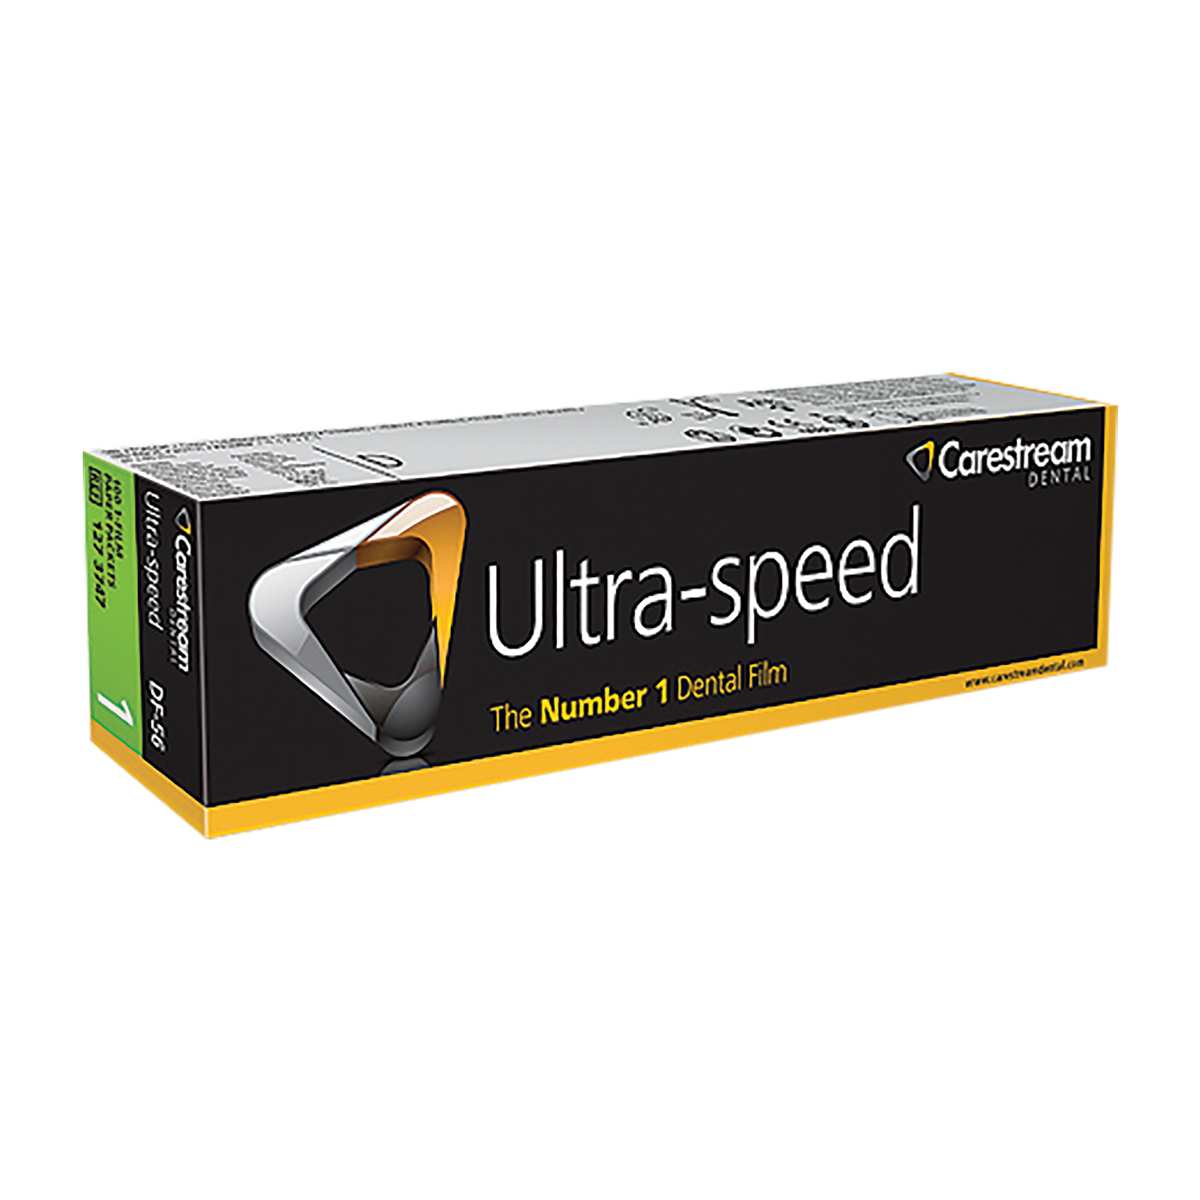 Carestream Ultra-Speed Film (Periapical Paper - Single Film)